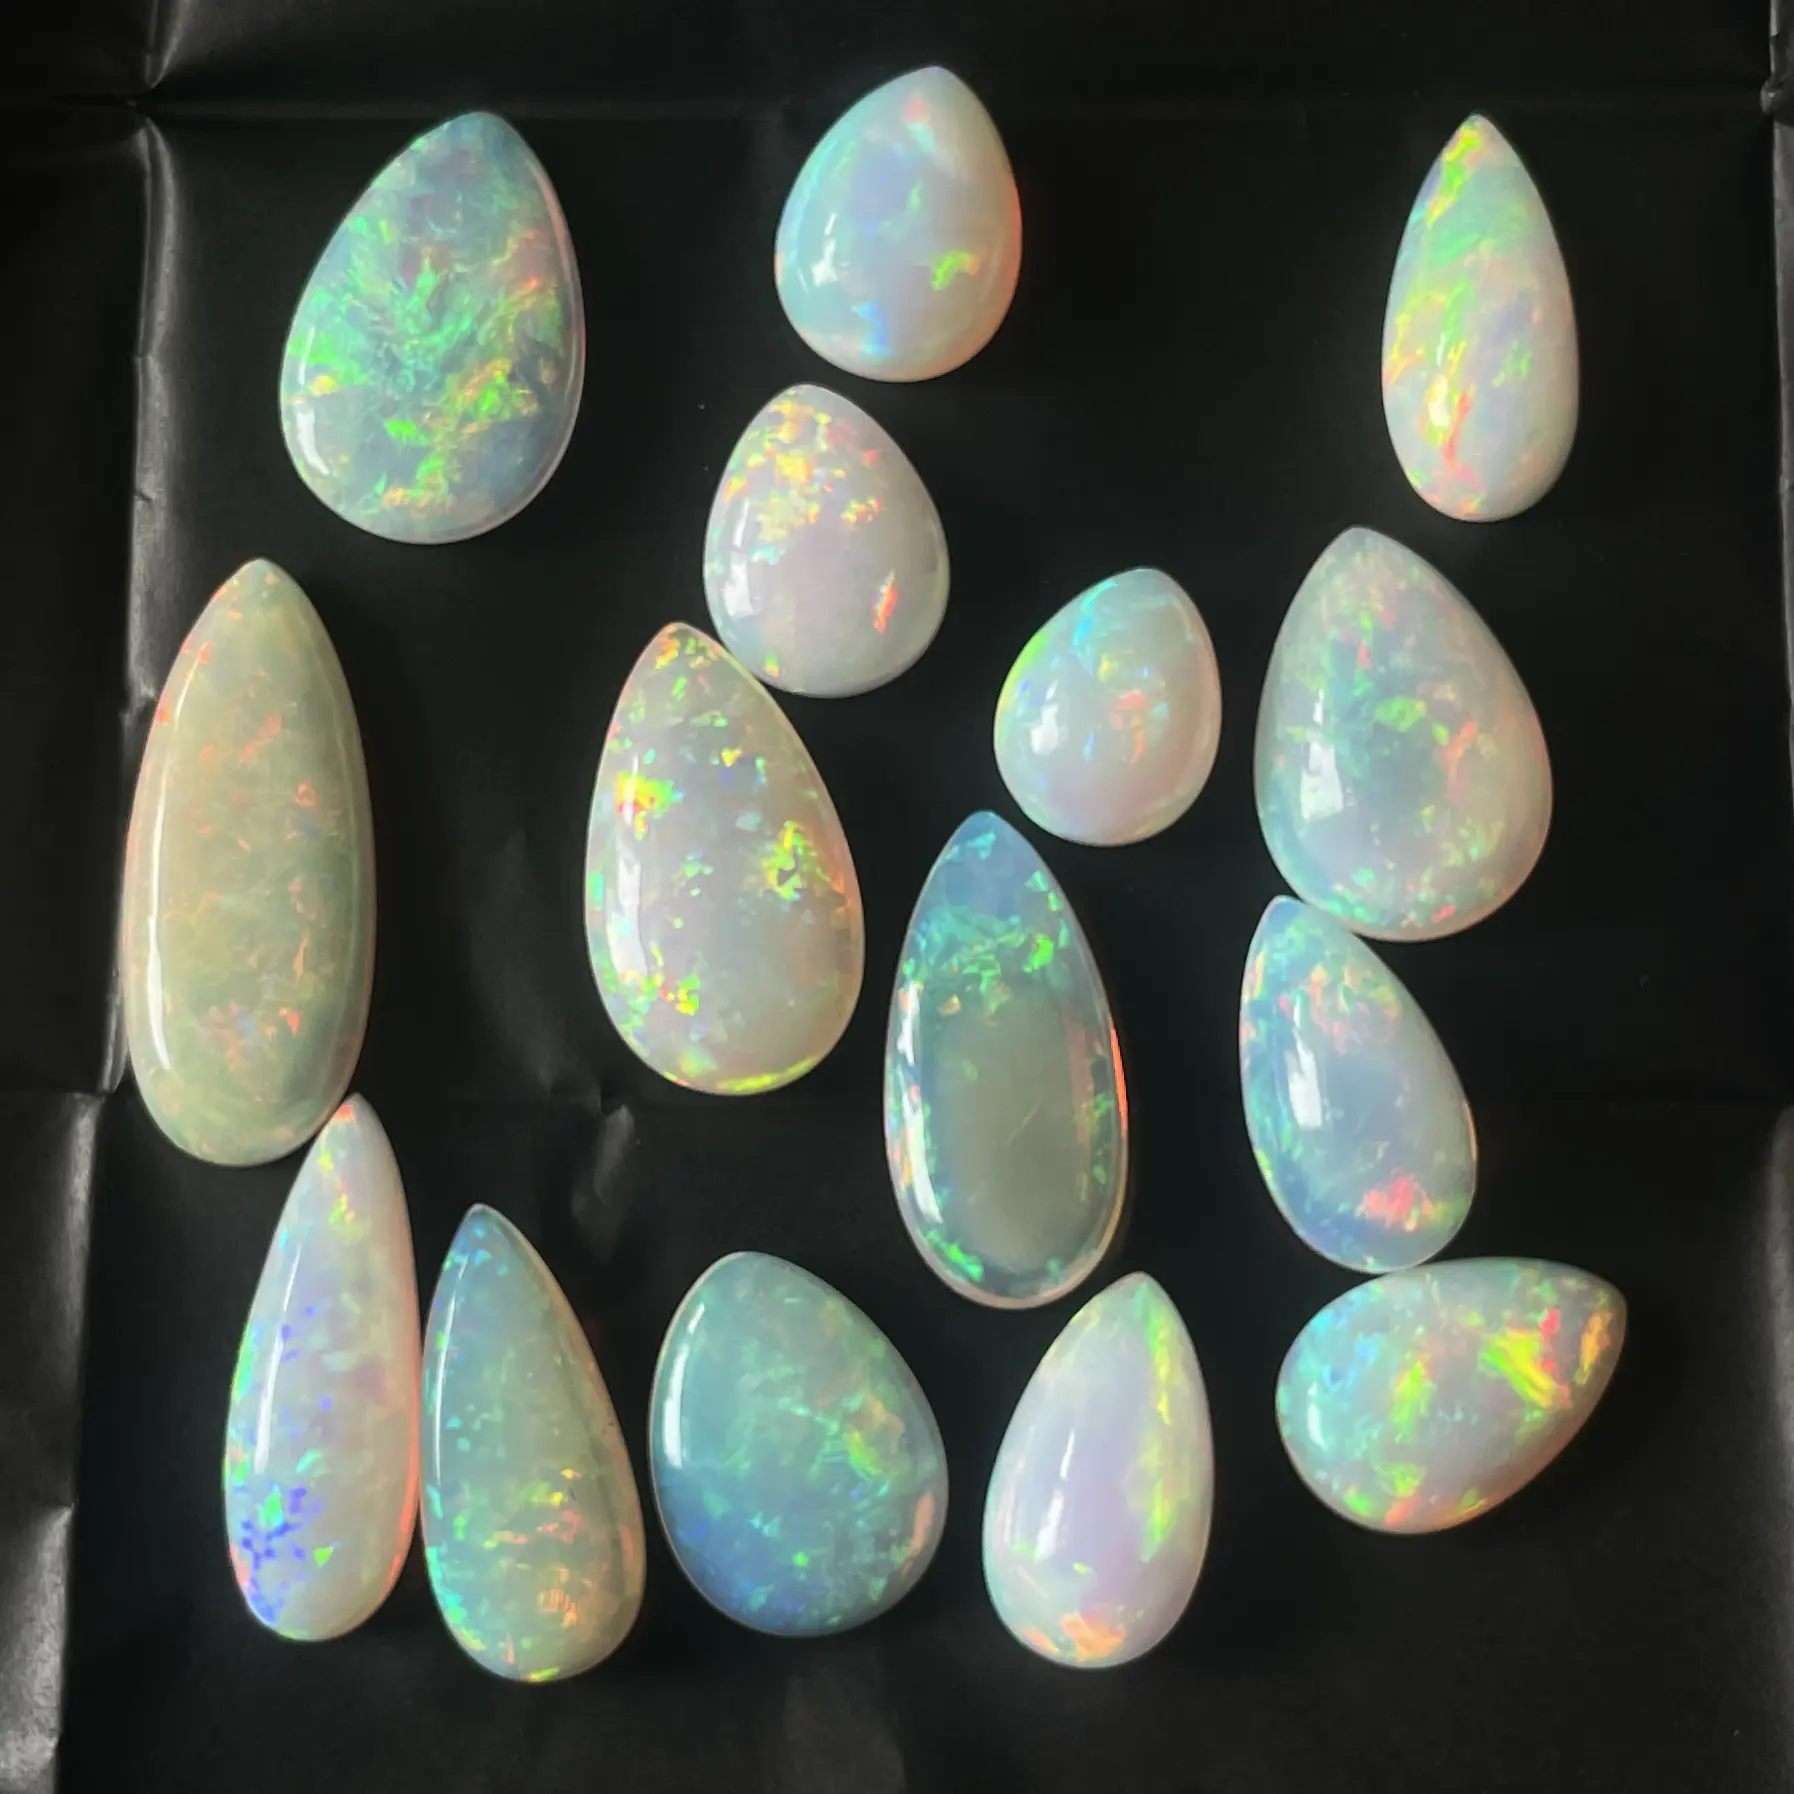 10 20 30 40 50 quilates tamaño natural ópalo etíope tamaño libre cabujones piedras preciosas sueltas proveedor al por mayor piedras semipreciosas AAA